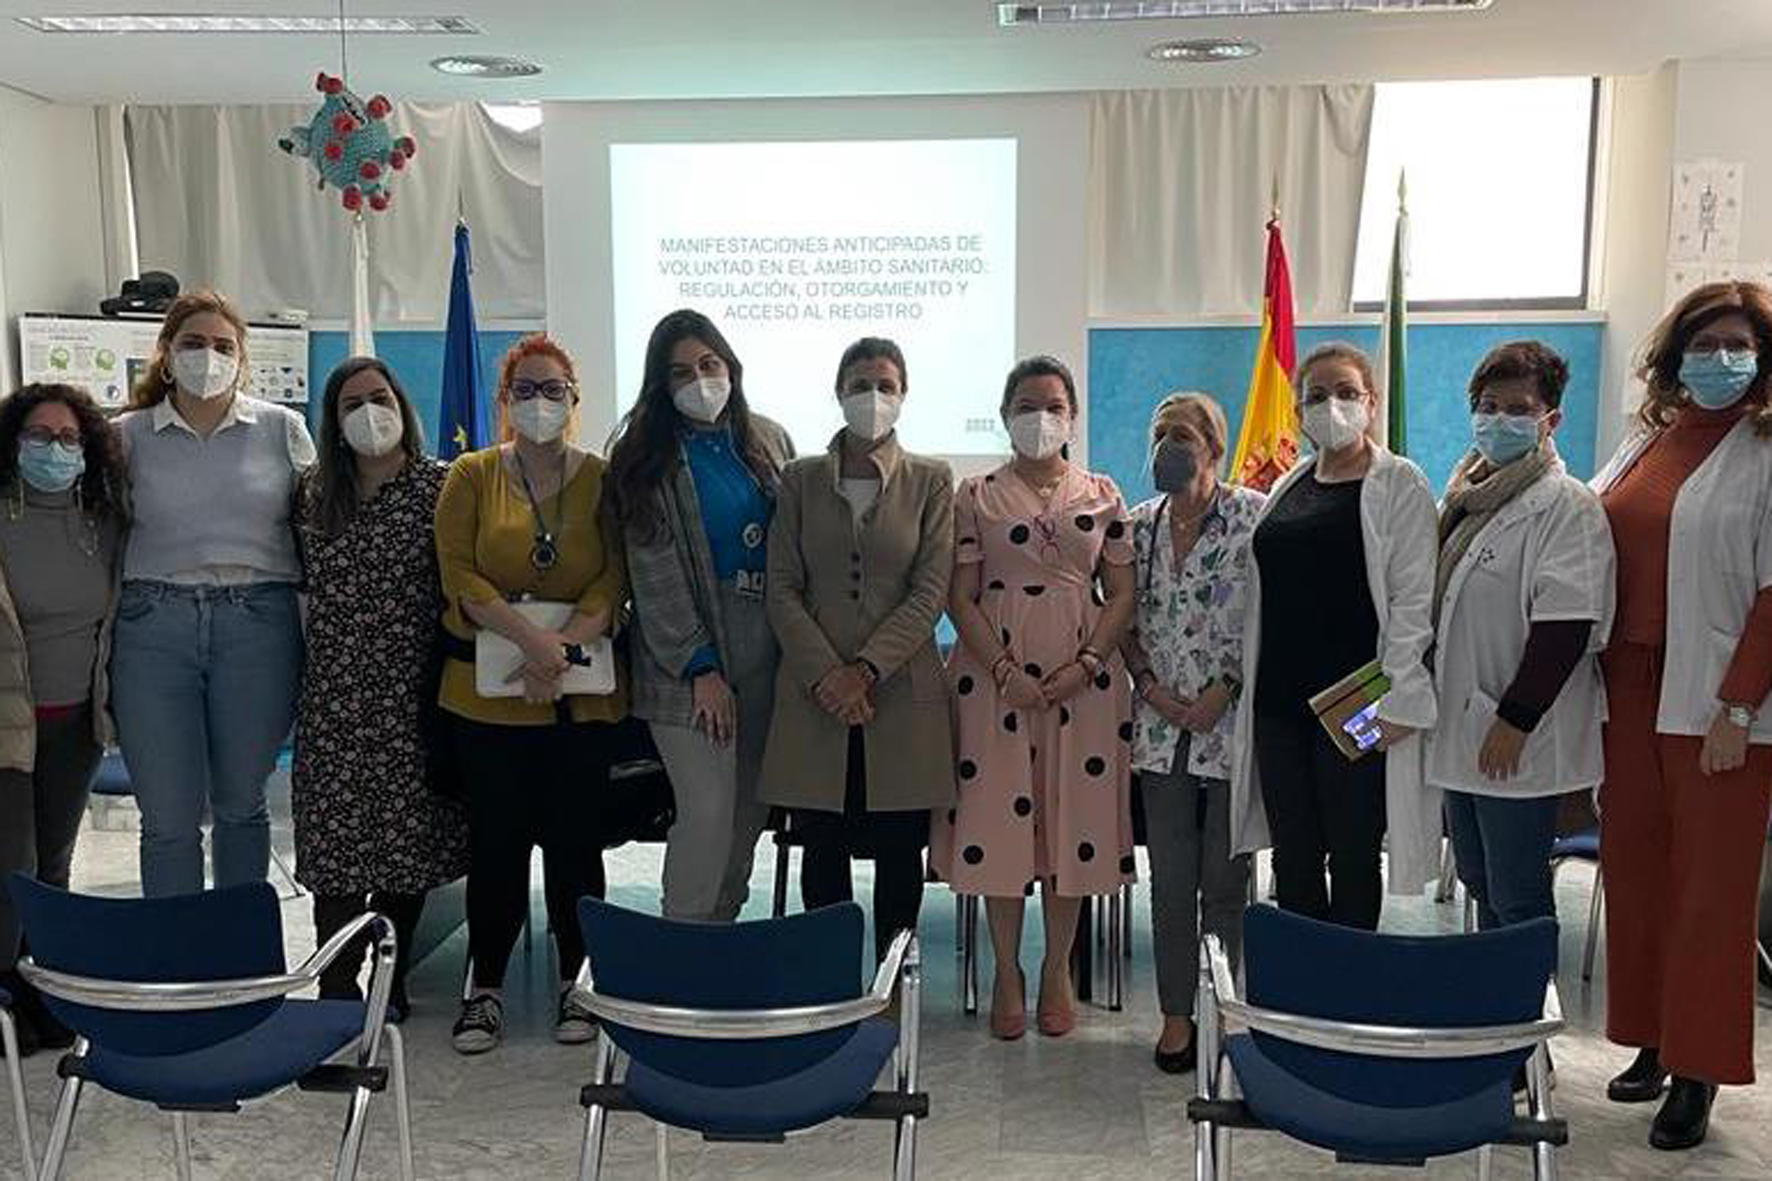 Profesionales sanitarios de El Hierro actualizan sus conocimientos en la aplicación de las Manifestaciones Anticipadas de Voluntad (MAV)